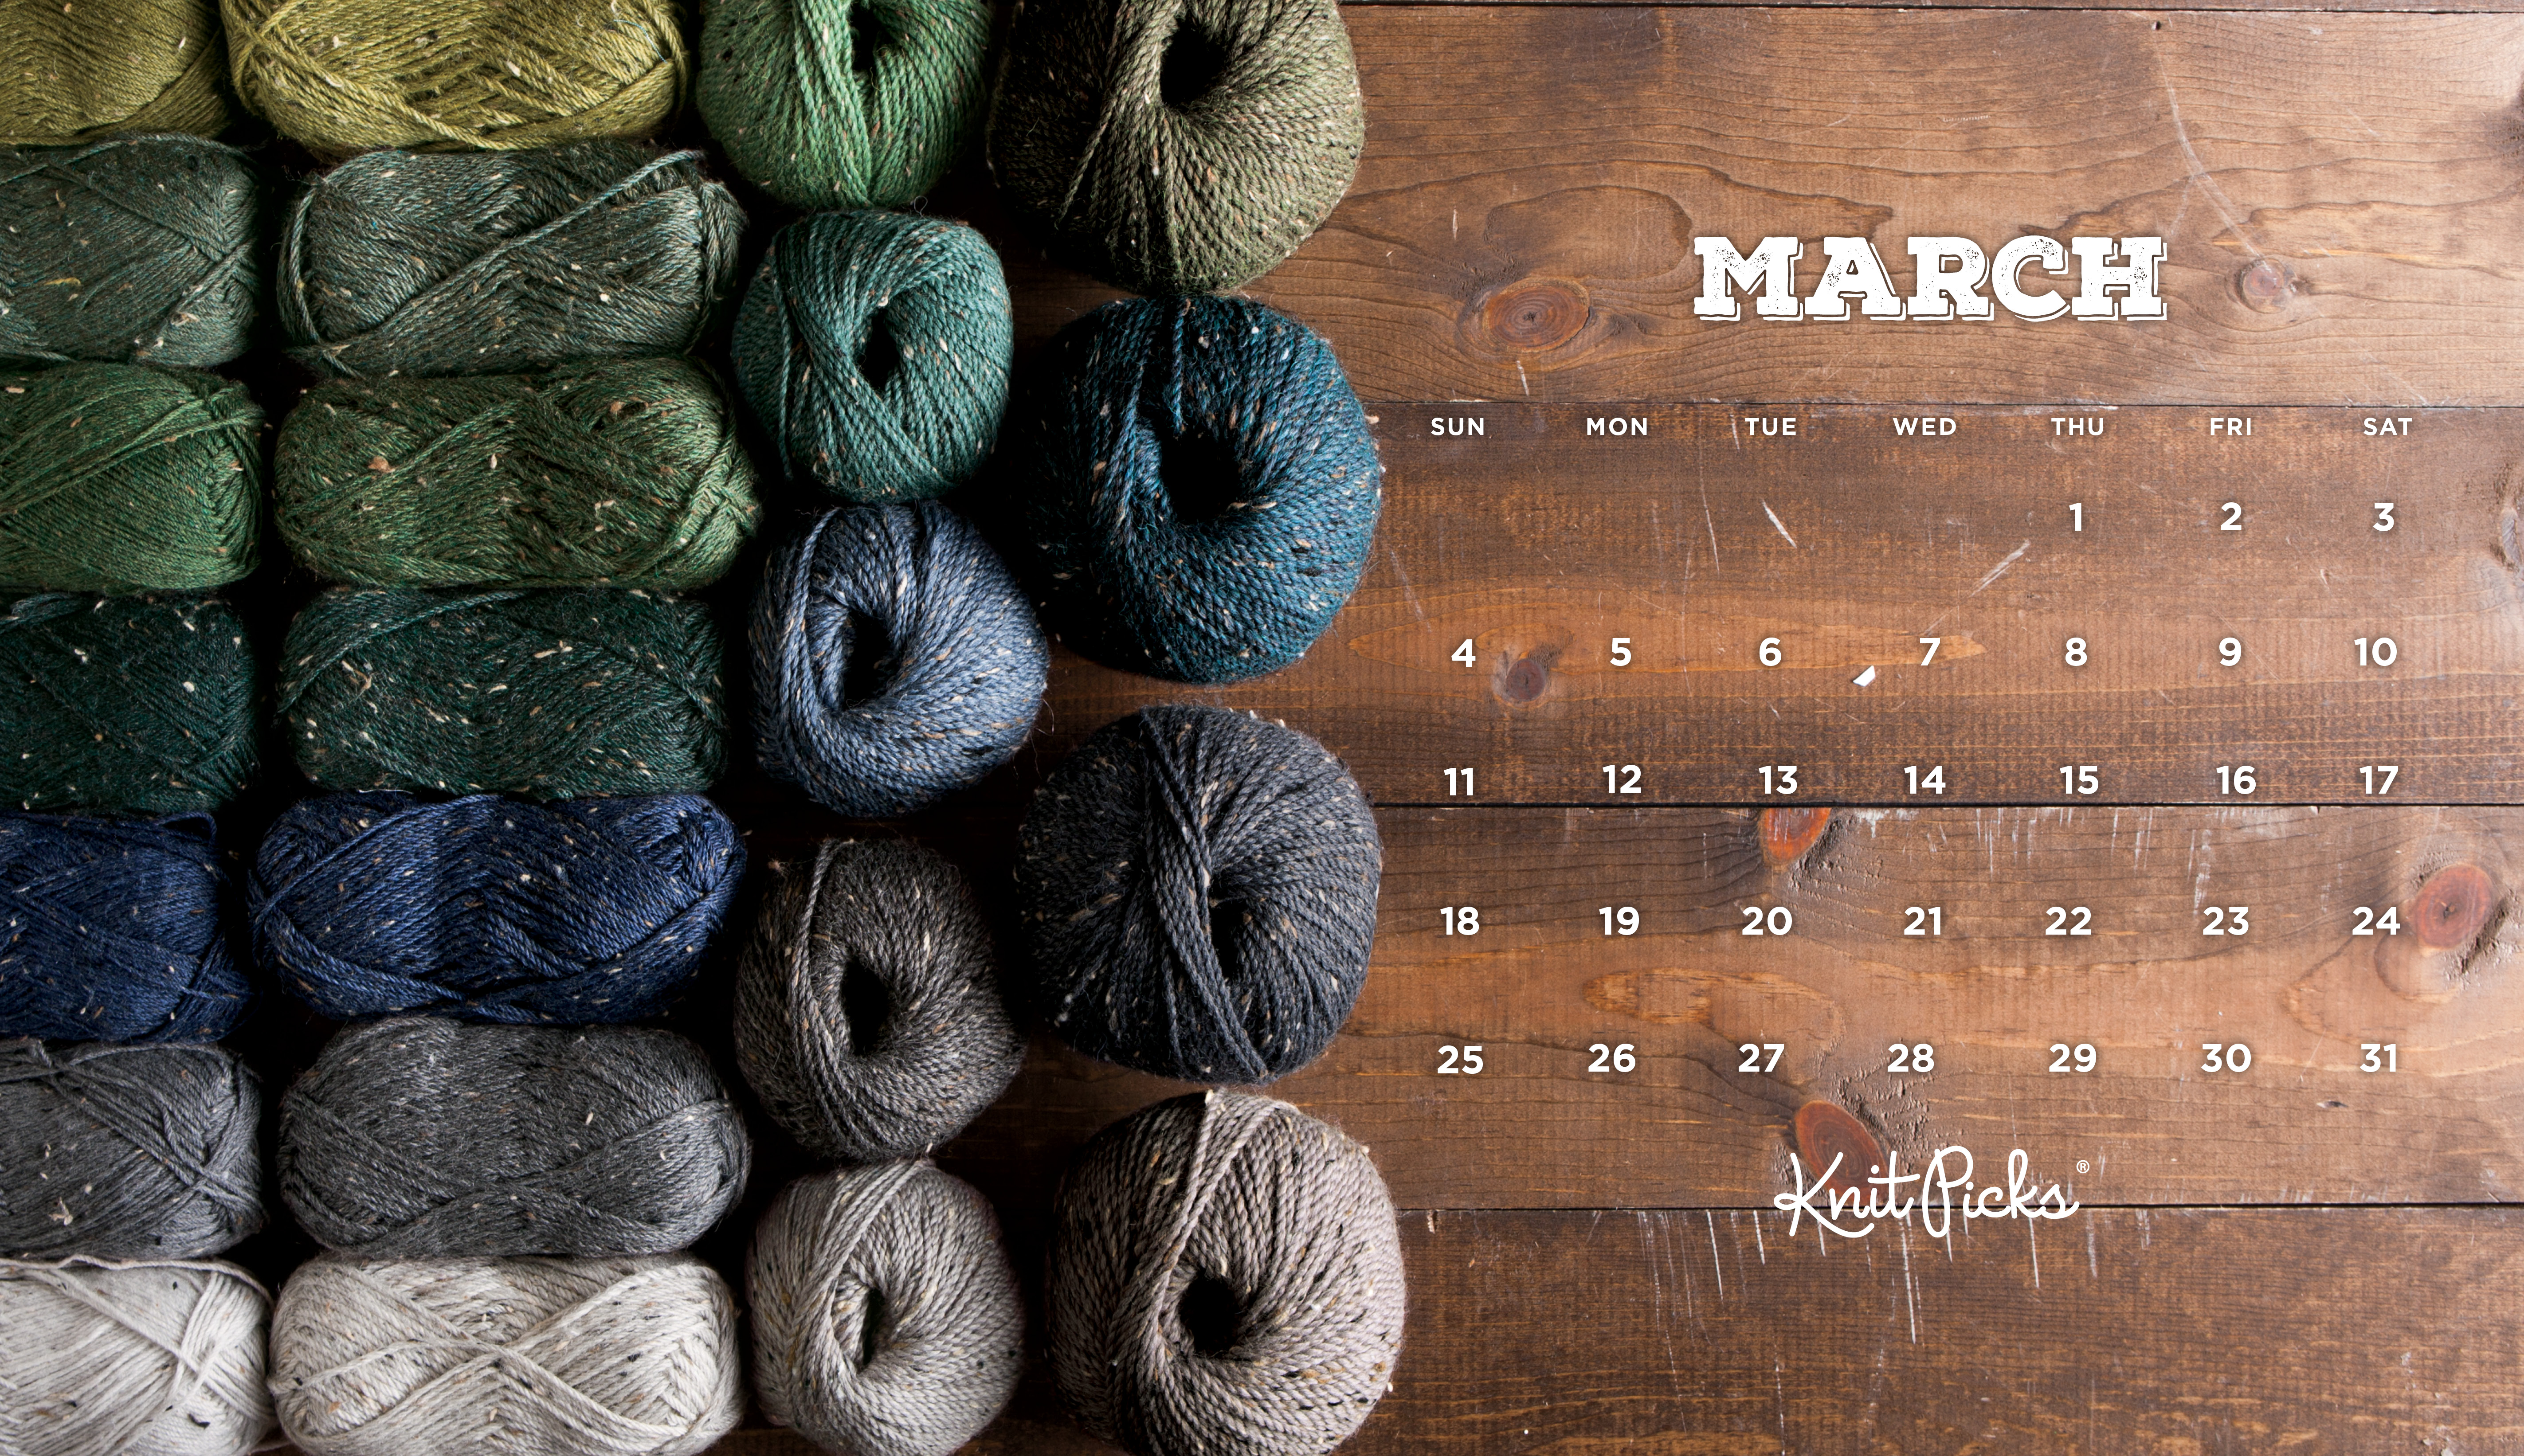 march-2018-calendar-stock-photo-mmaxer-165848978